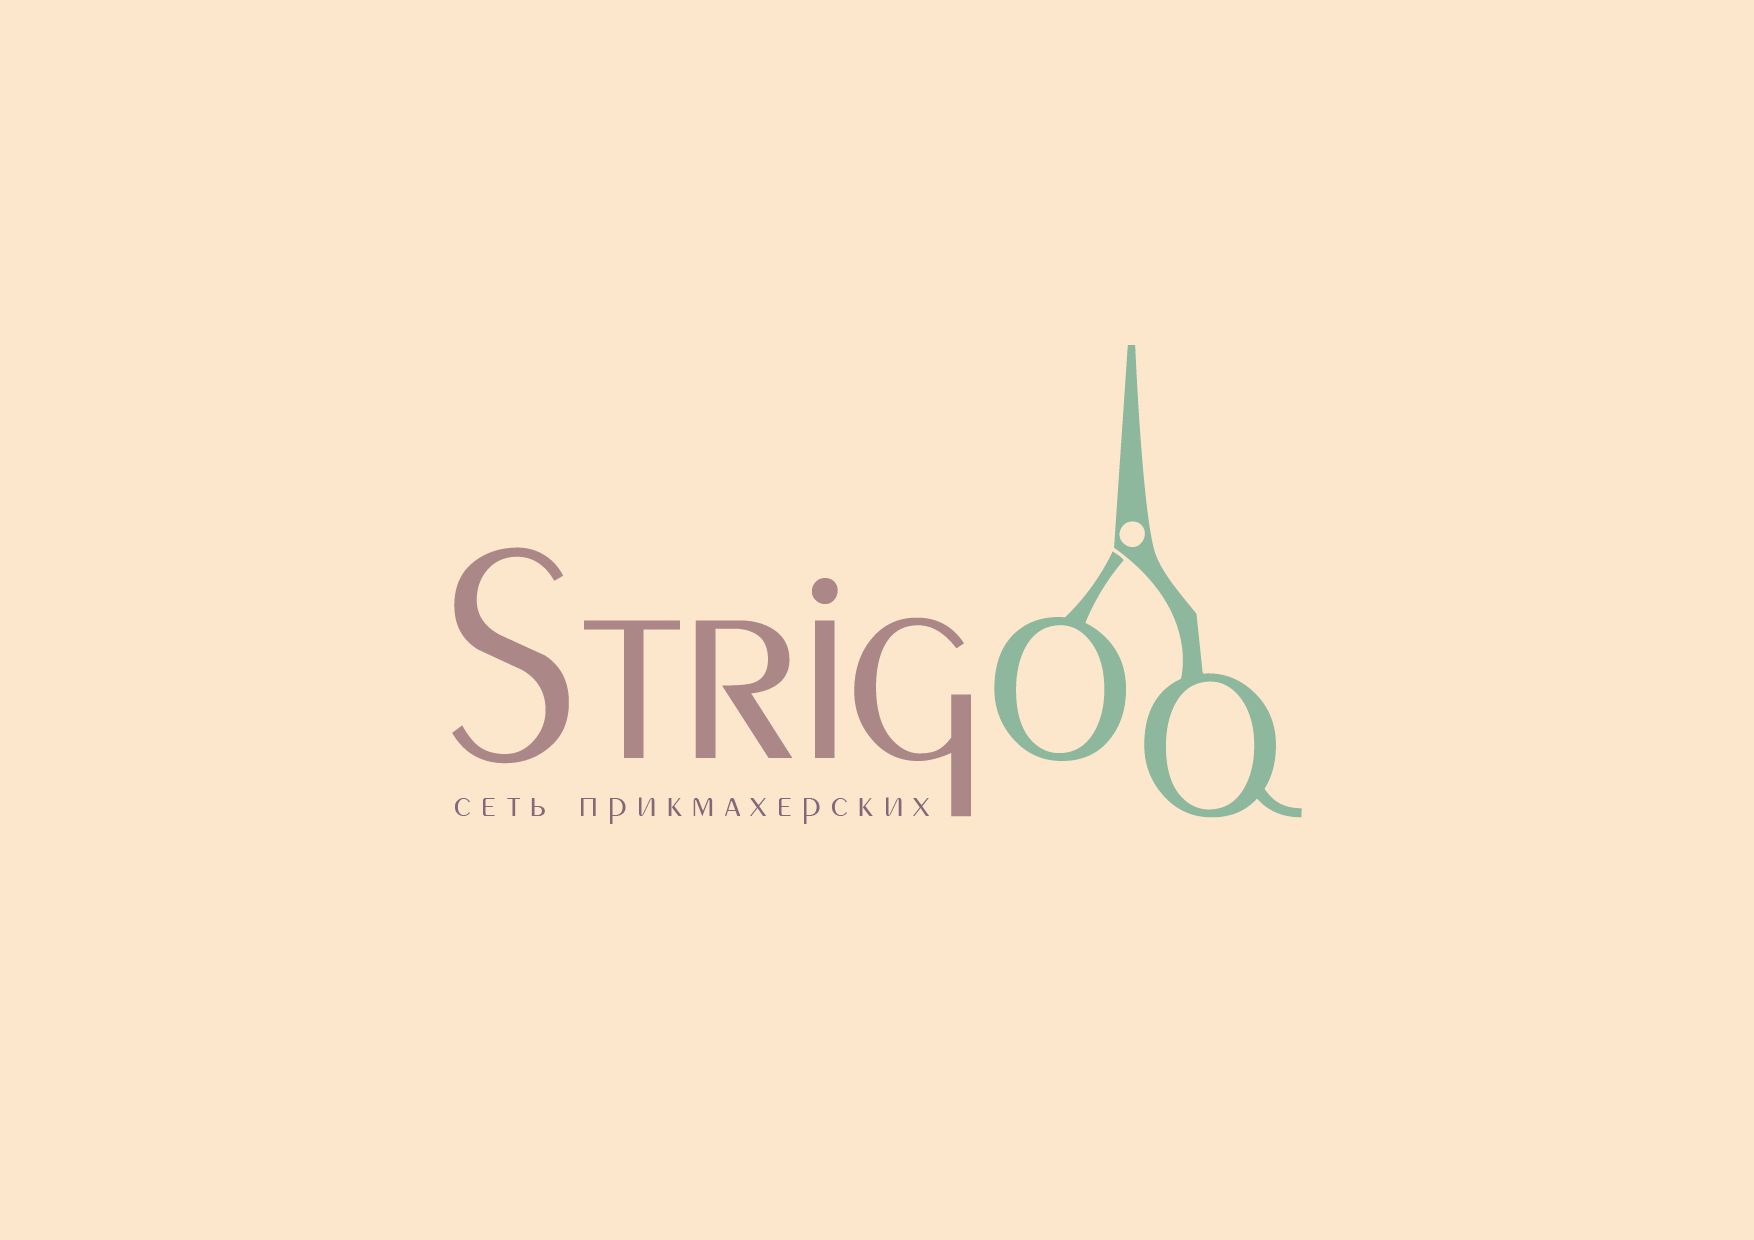 Лого и фирменный стиль для Strigoo - дизайнер Buginiao